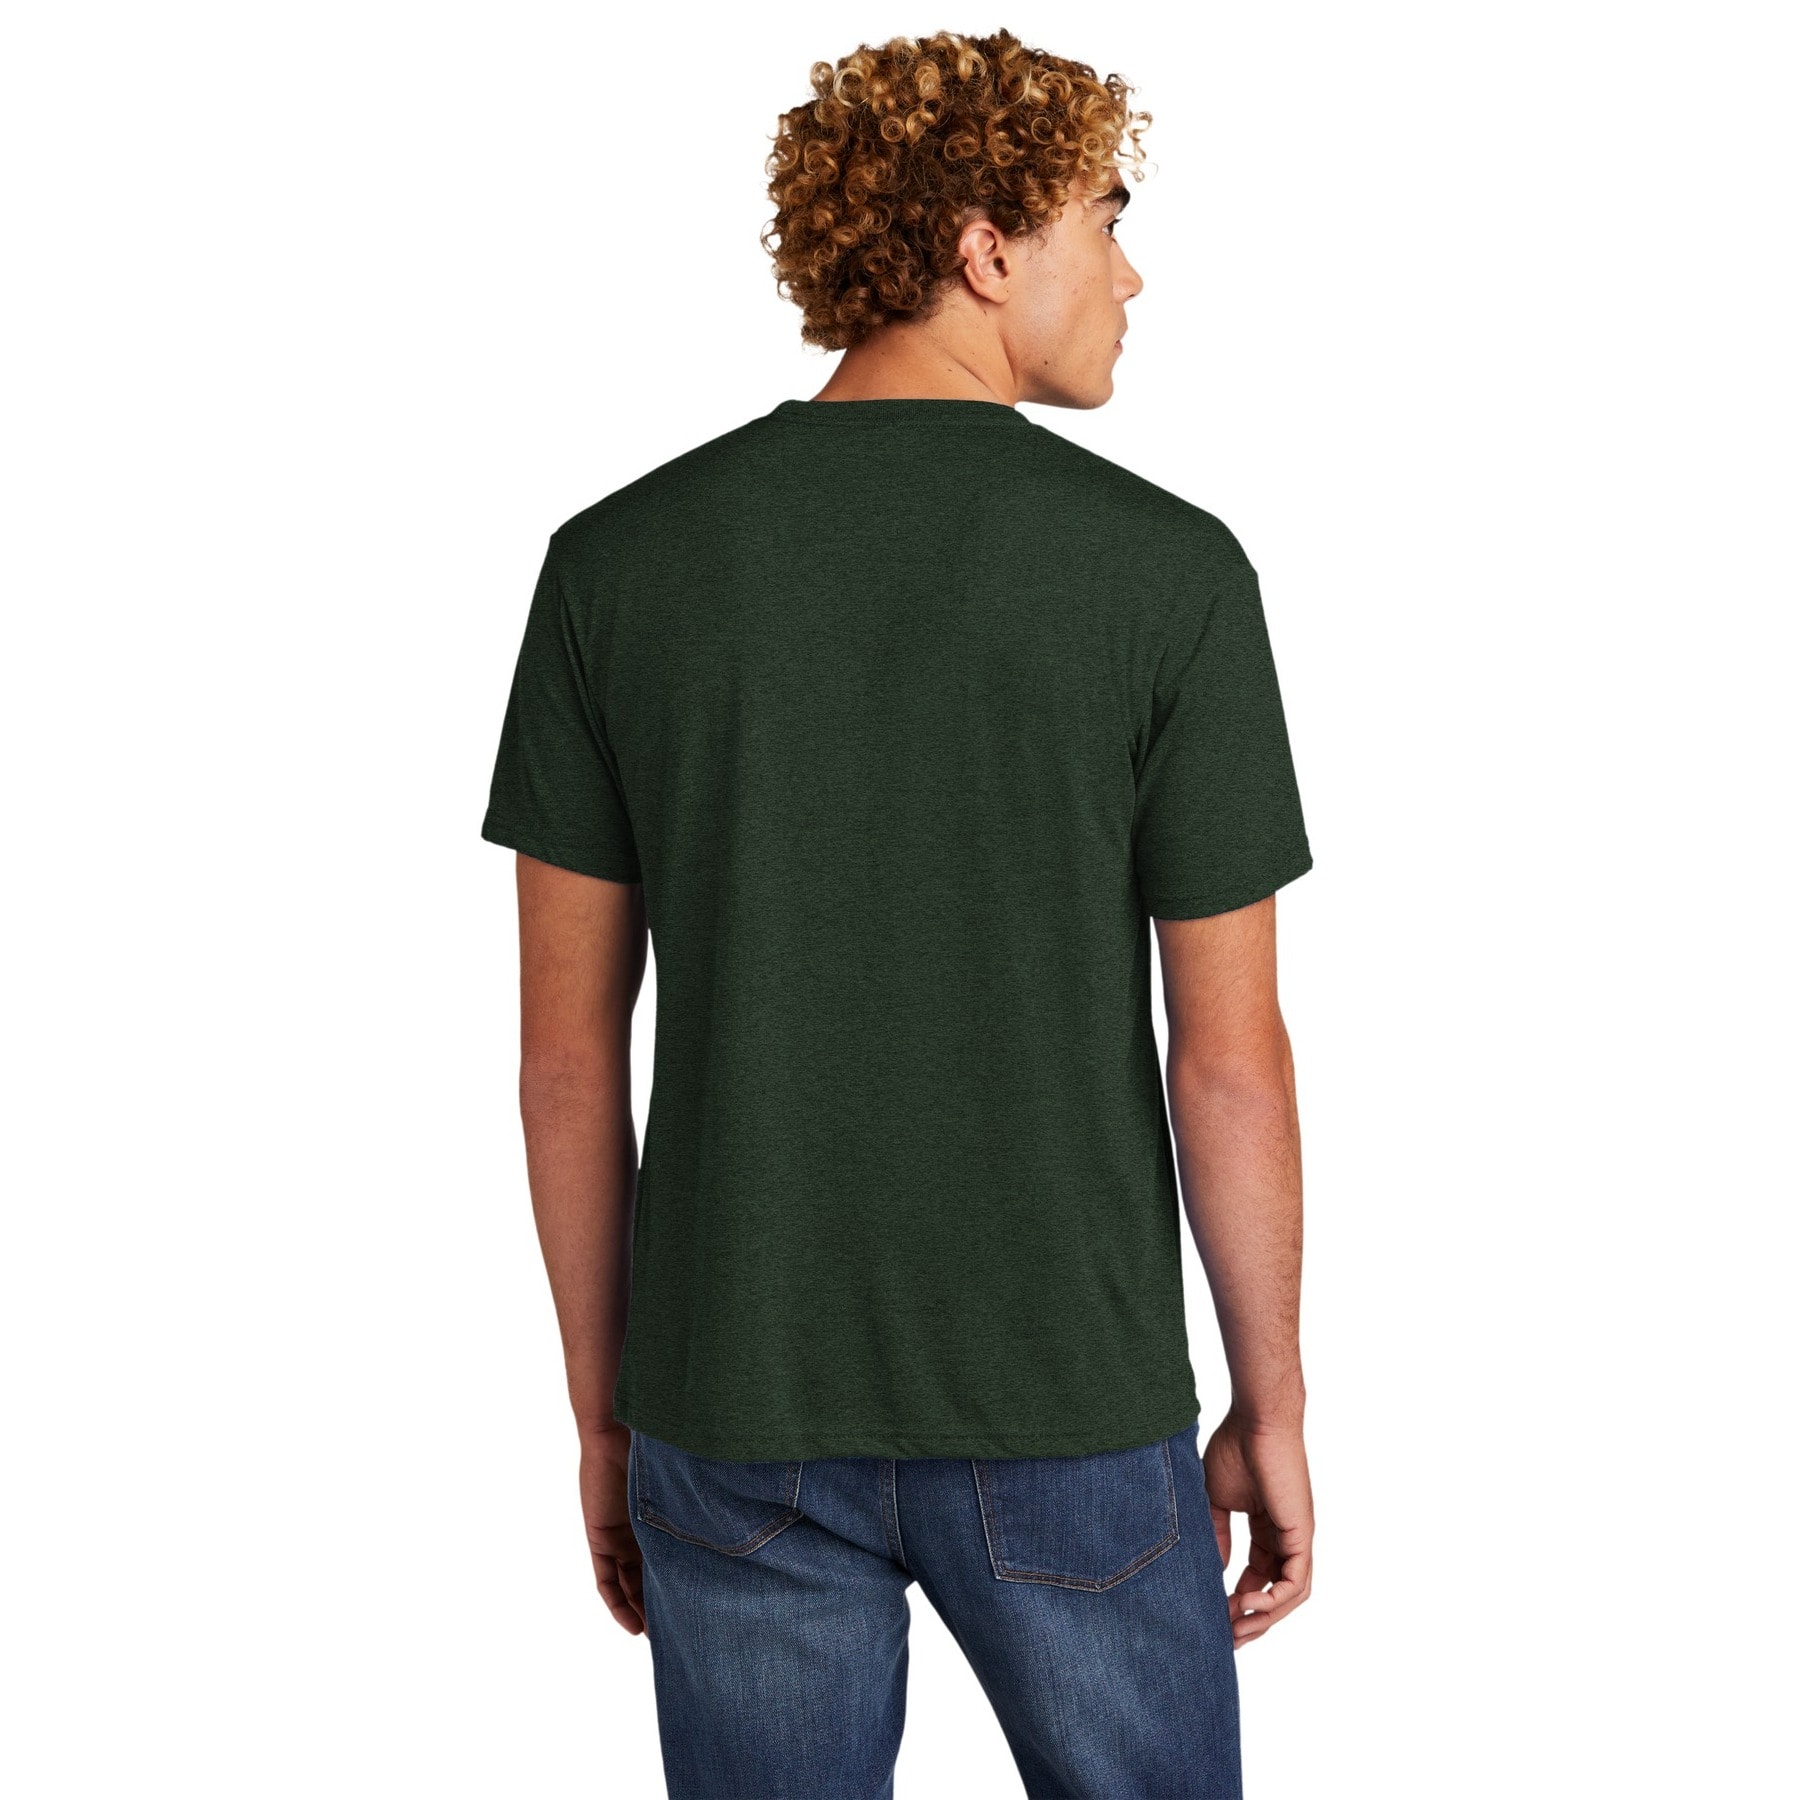 Next Level Colors Unisex Tri-Blend T-Shirt